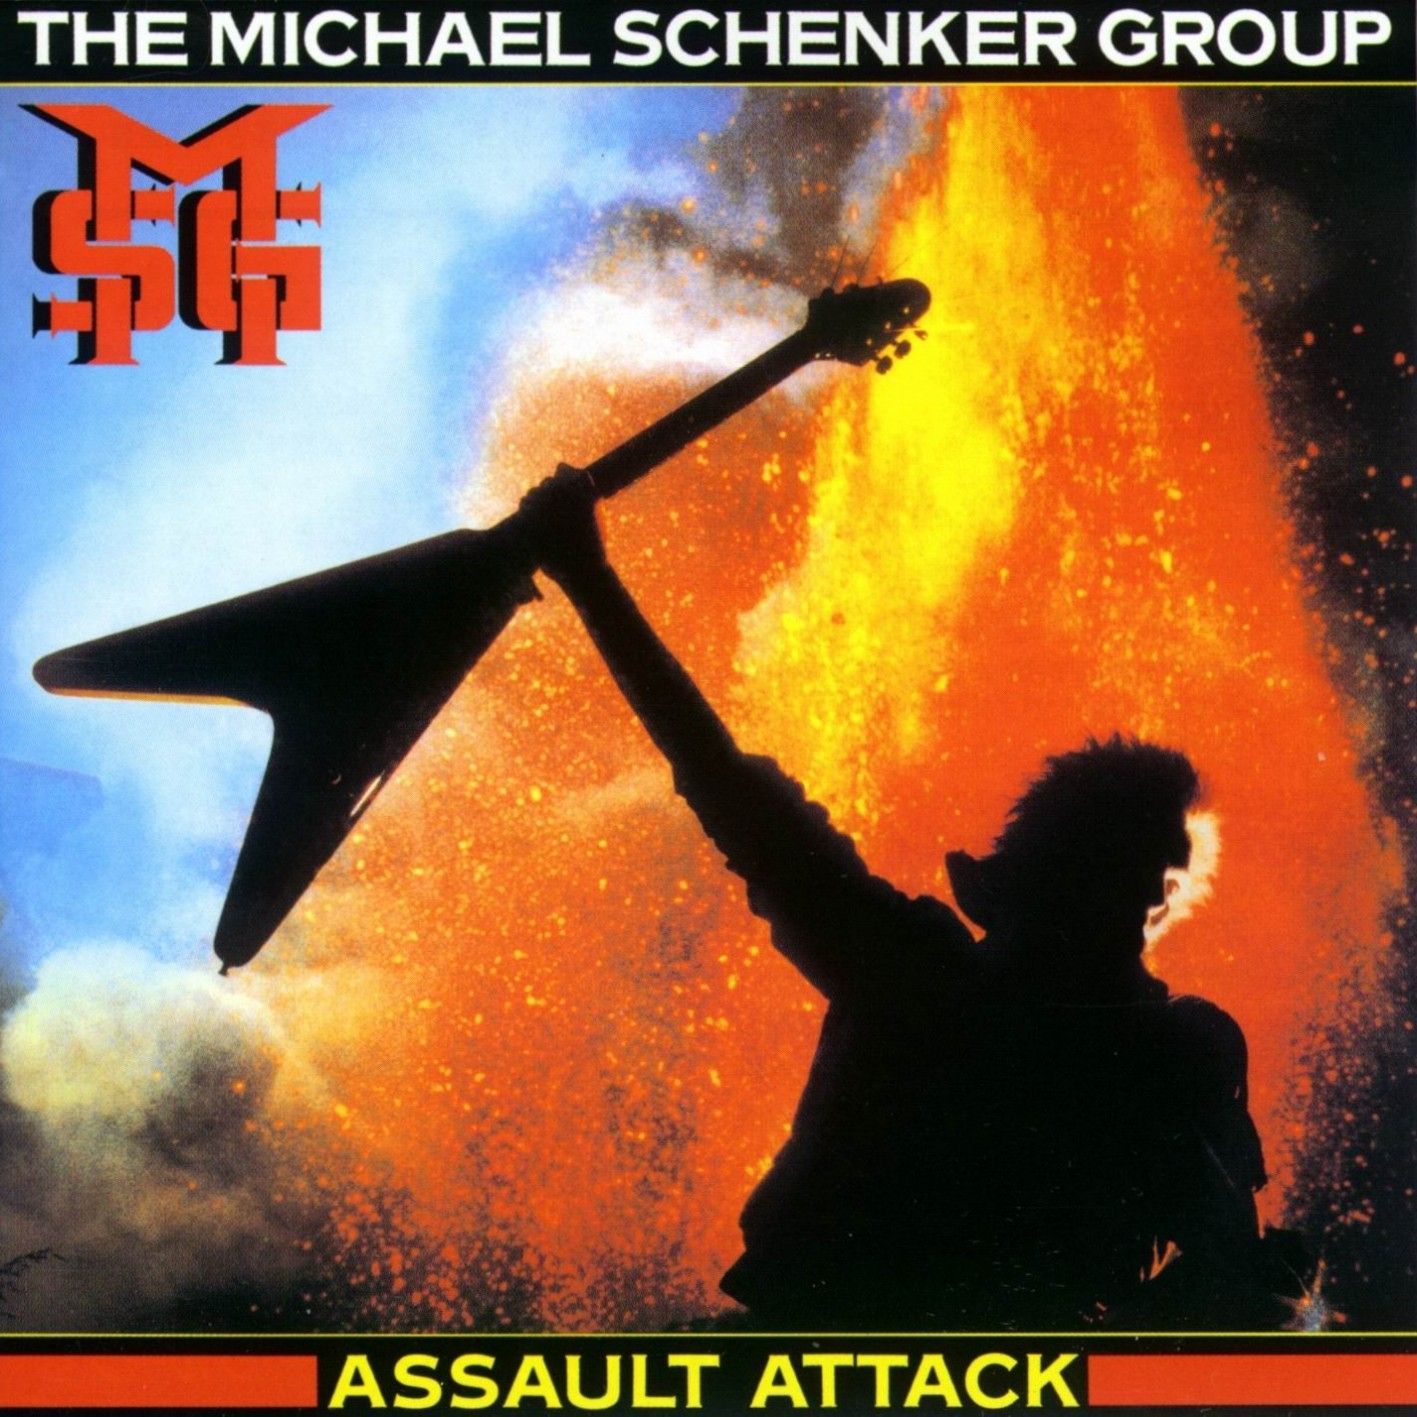 Imagem do álbum Assault Attack do(a) artista Michael Schenker Group